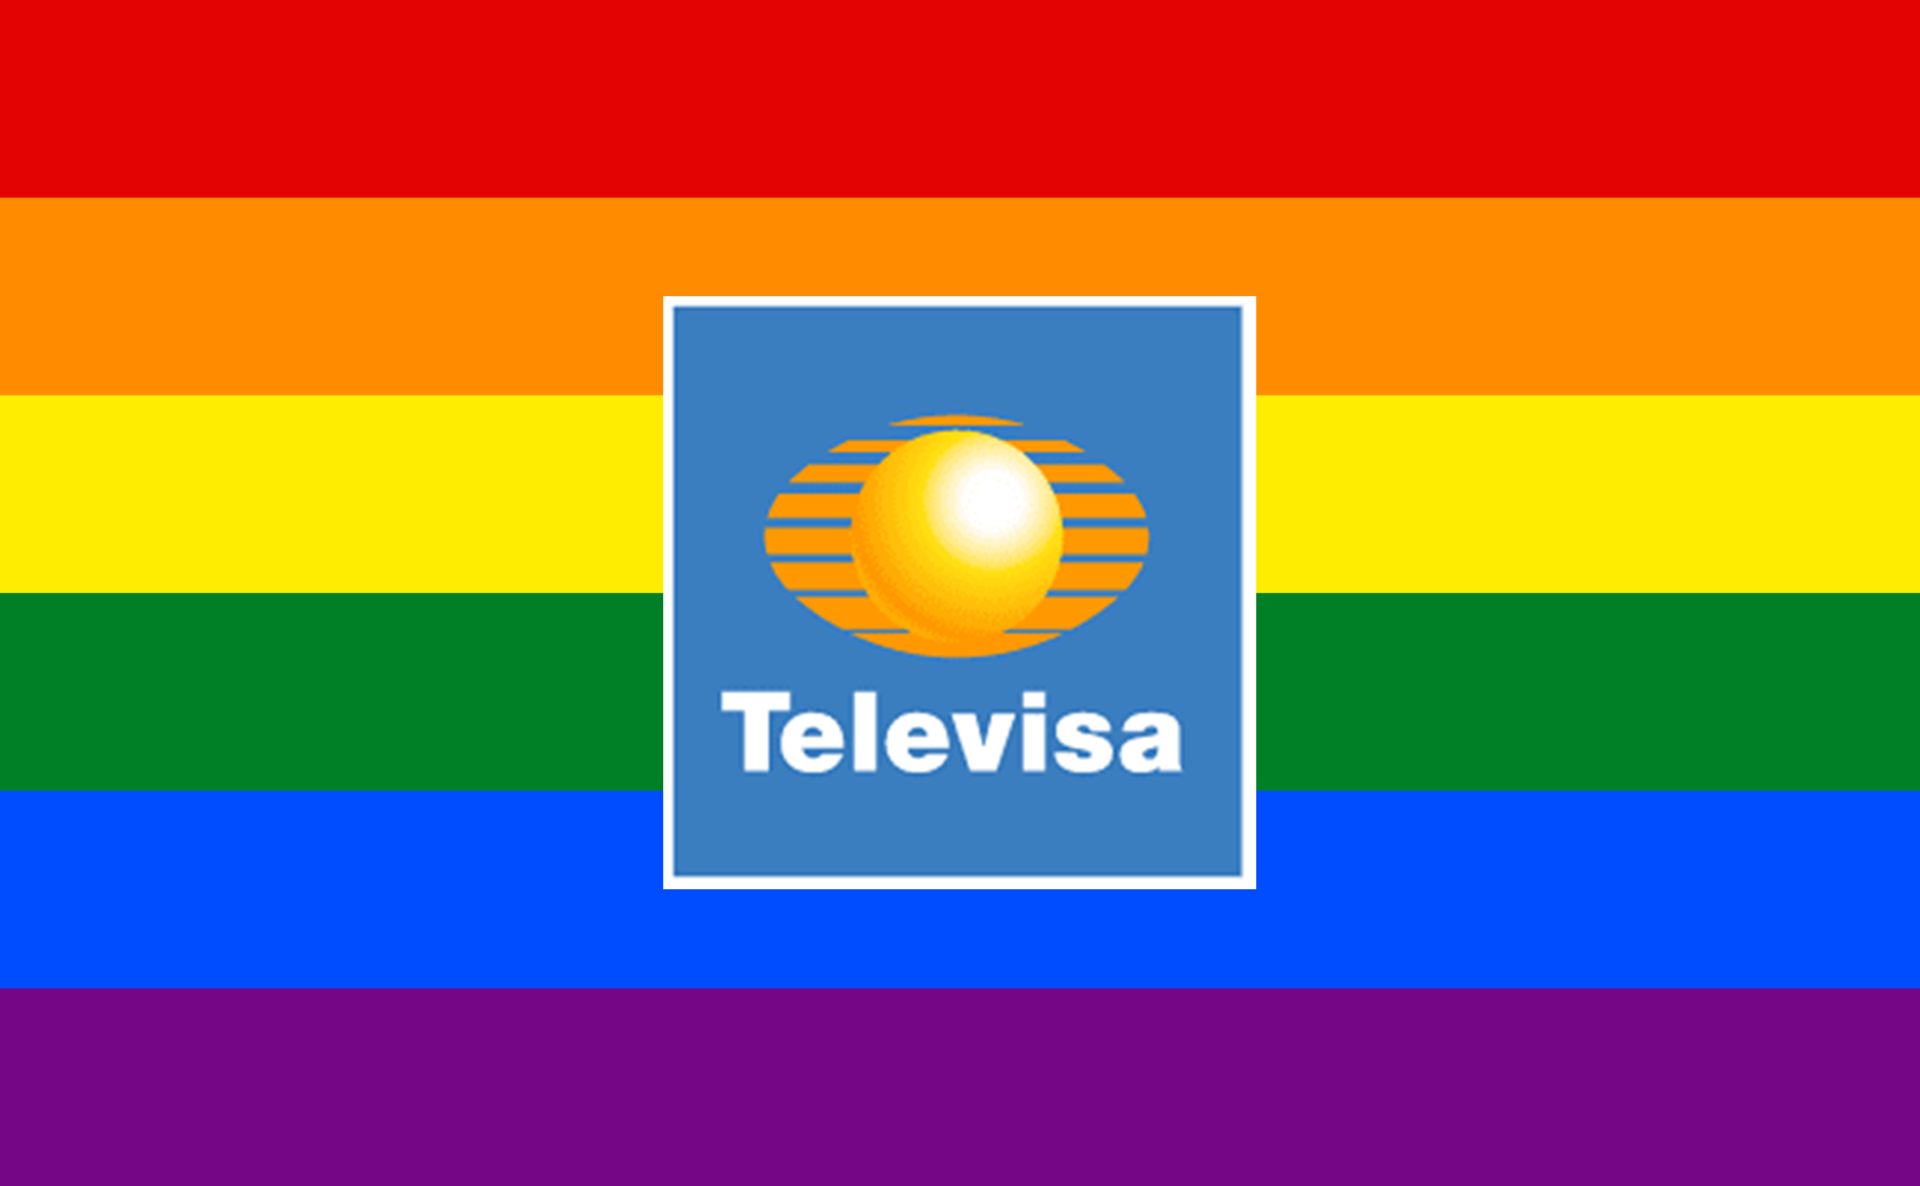 Televisa produzirá a primeira novela com protagonista gay (Divulgação)